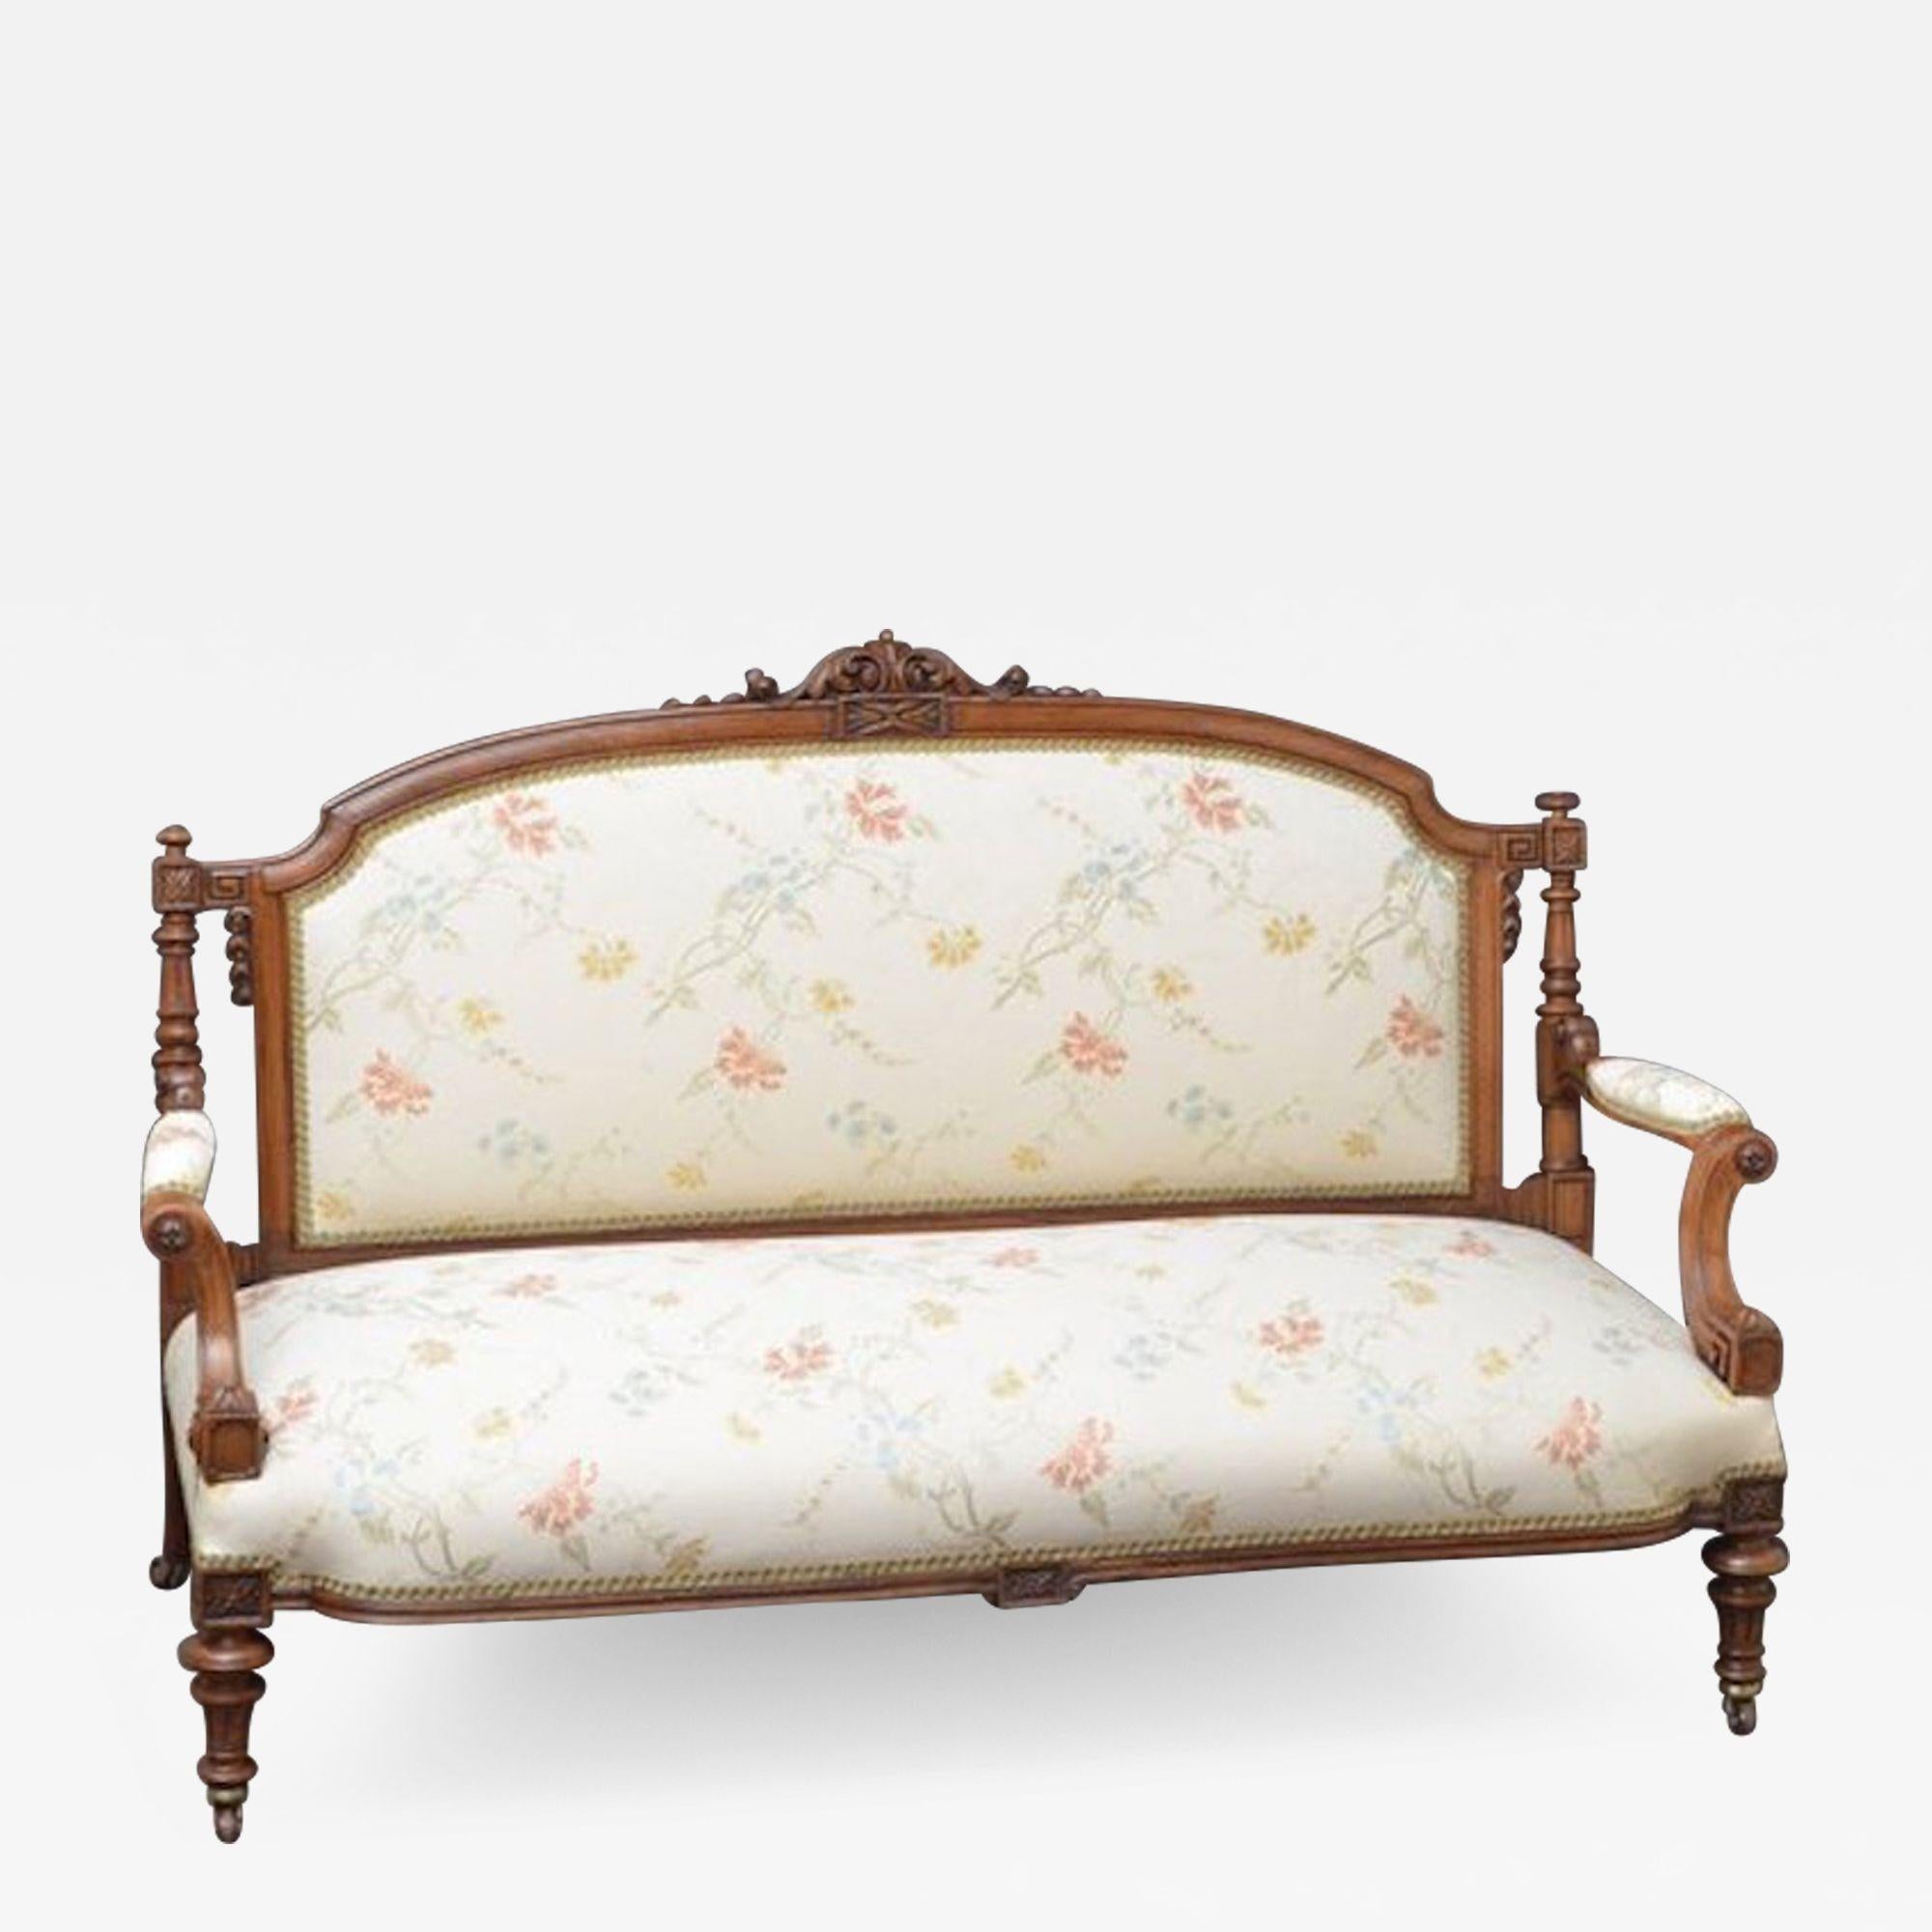 Sn3818 Feine Qualität, erhebliche viktorianischen Sofa in Nussbaum, mit eleganten geformten Rücken mit scrolling foliate Schnitzerei, flankiert von kannelierten Säulen und komplizierte Details, über gescrollt offene Arme und gedreht und kannelierte